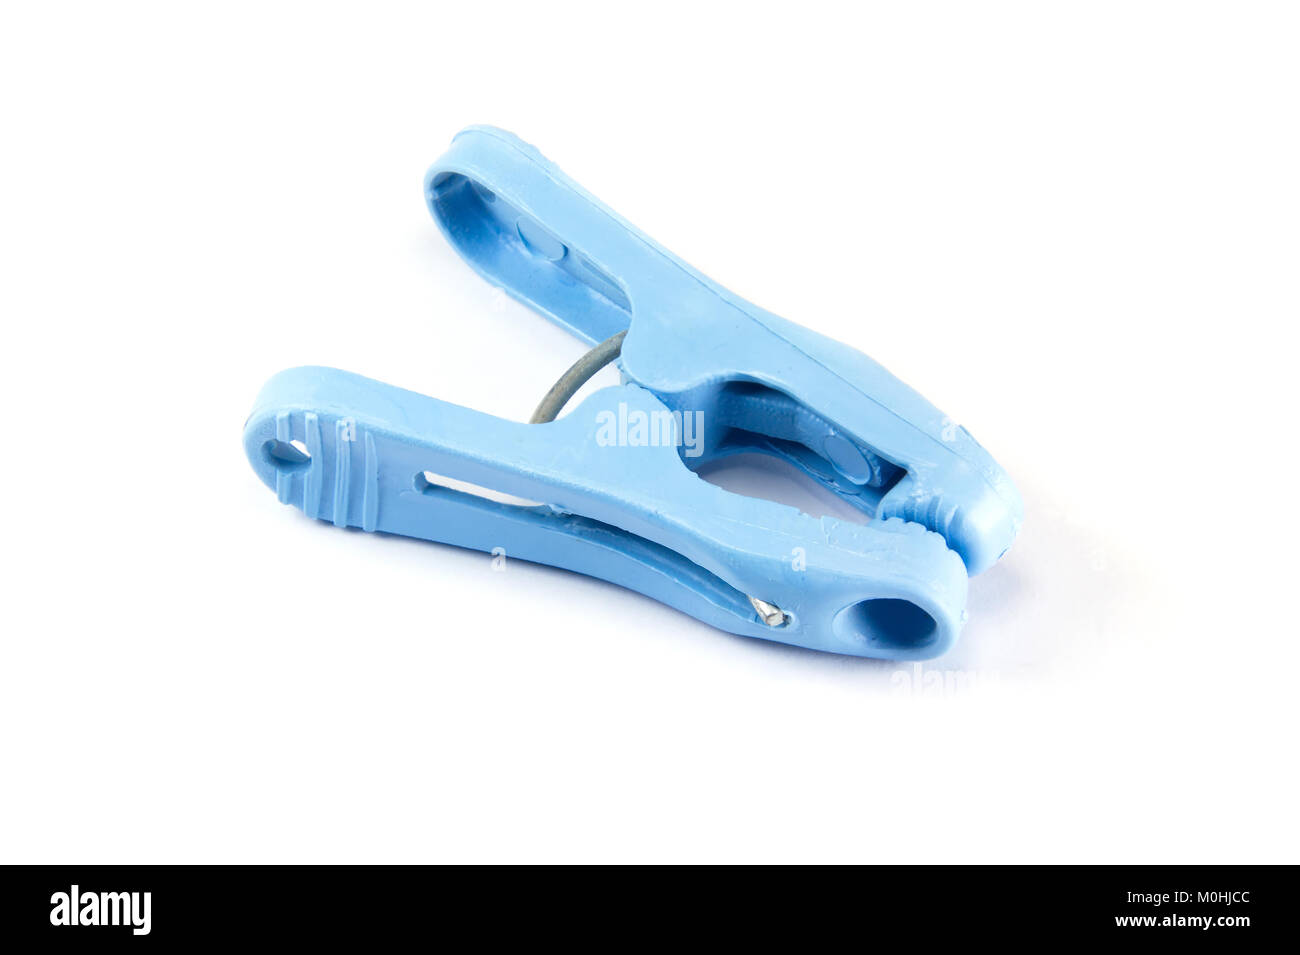 Chiuso blu o clothespeg clothespins isolati su sfondo bianco Foto Stock